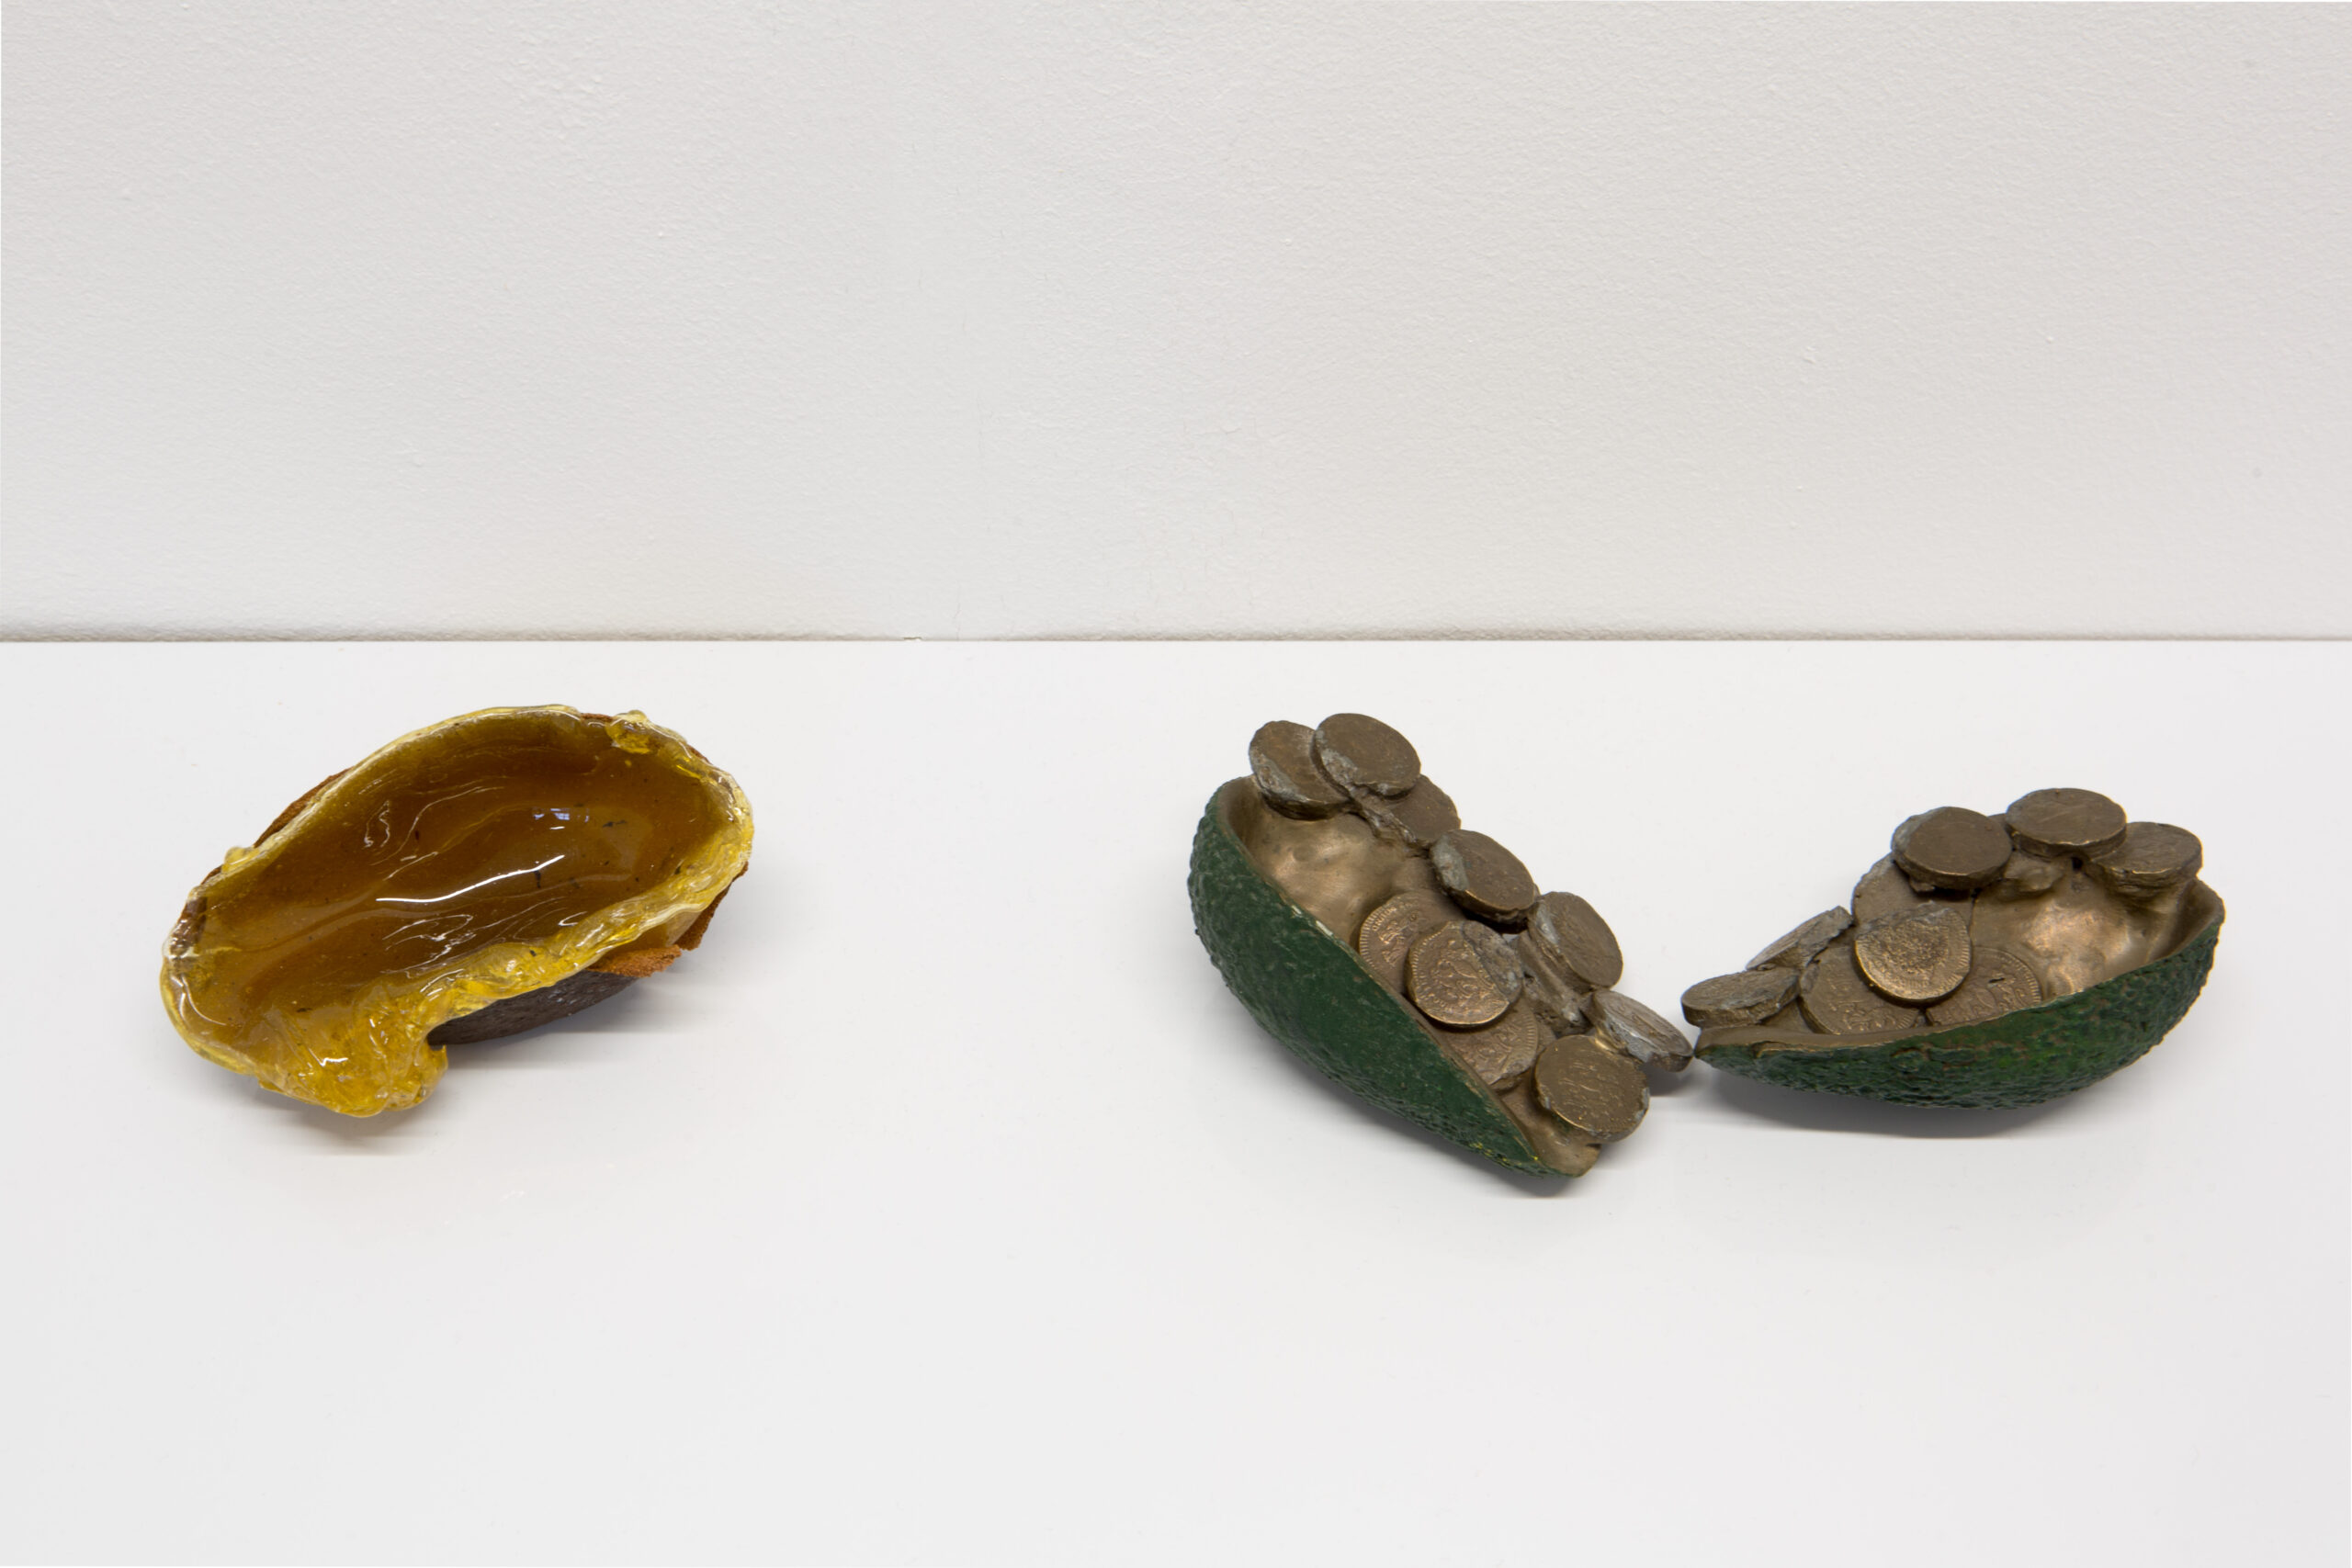 Lana Locke Avocado slime (2020) Glass wax and avocado skin, 5 cm x 11 cm x 6 cm. Lana Locke Avocado and coins (ii) (double) (2012) Bronze, 5 cm x 16 cm x 12 cm.